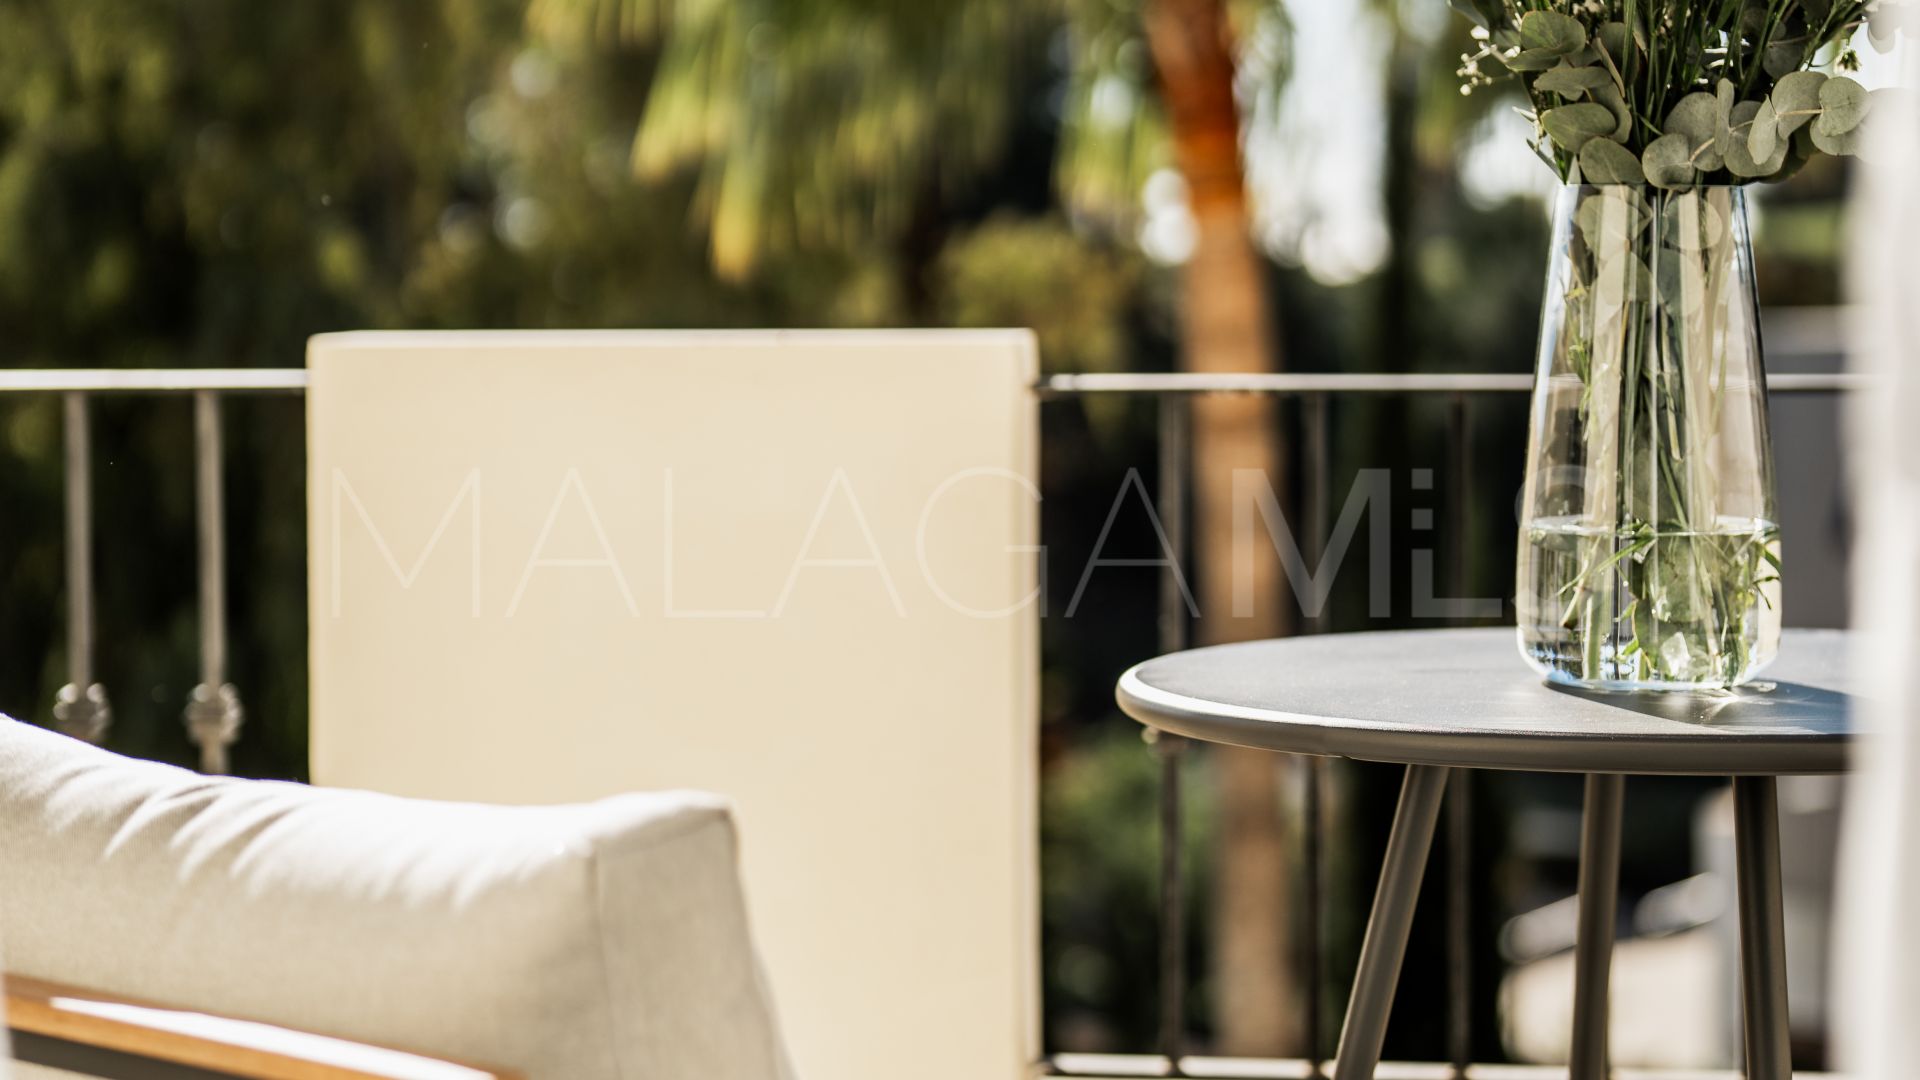 Atico duplex for sale de 3 bedrooms in Marbella Ciudad